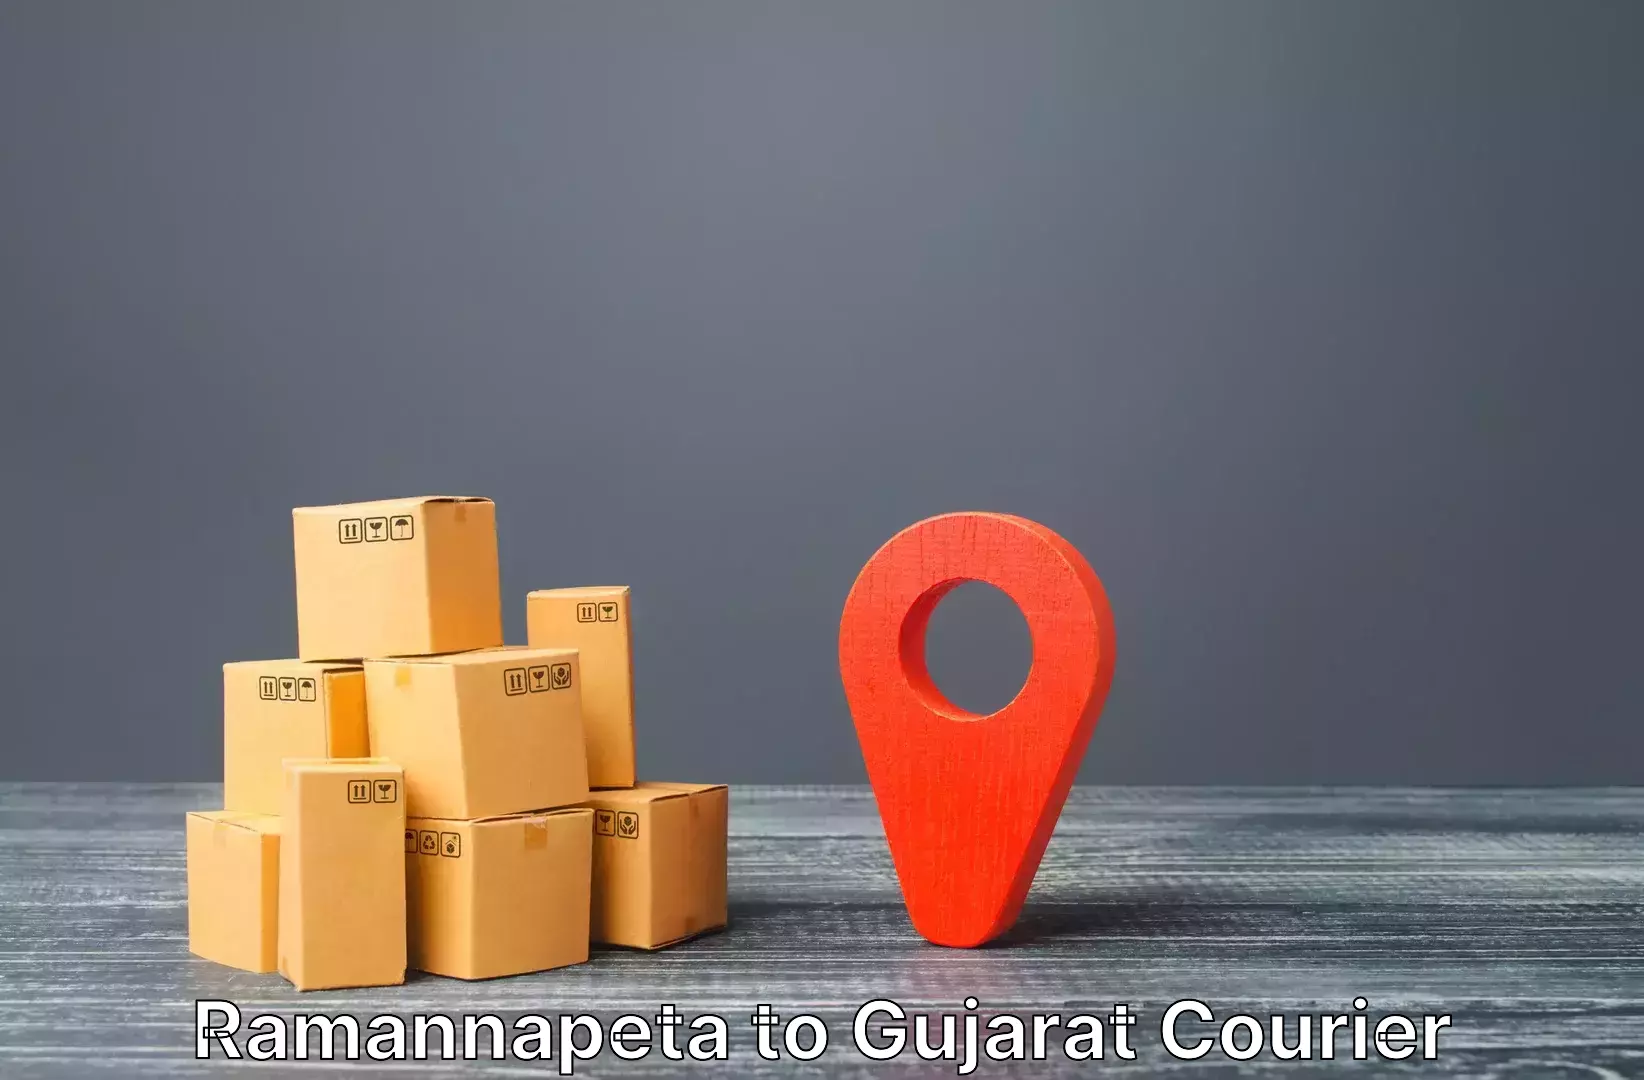 Luggage shipment specialists Ramannapeta to Botad